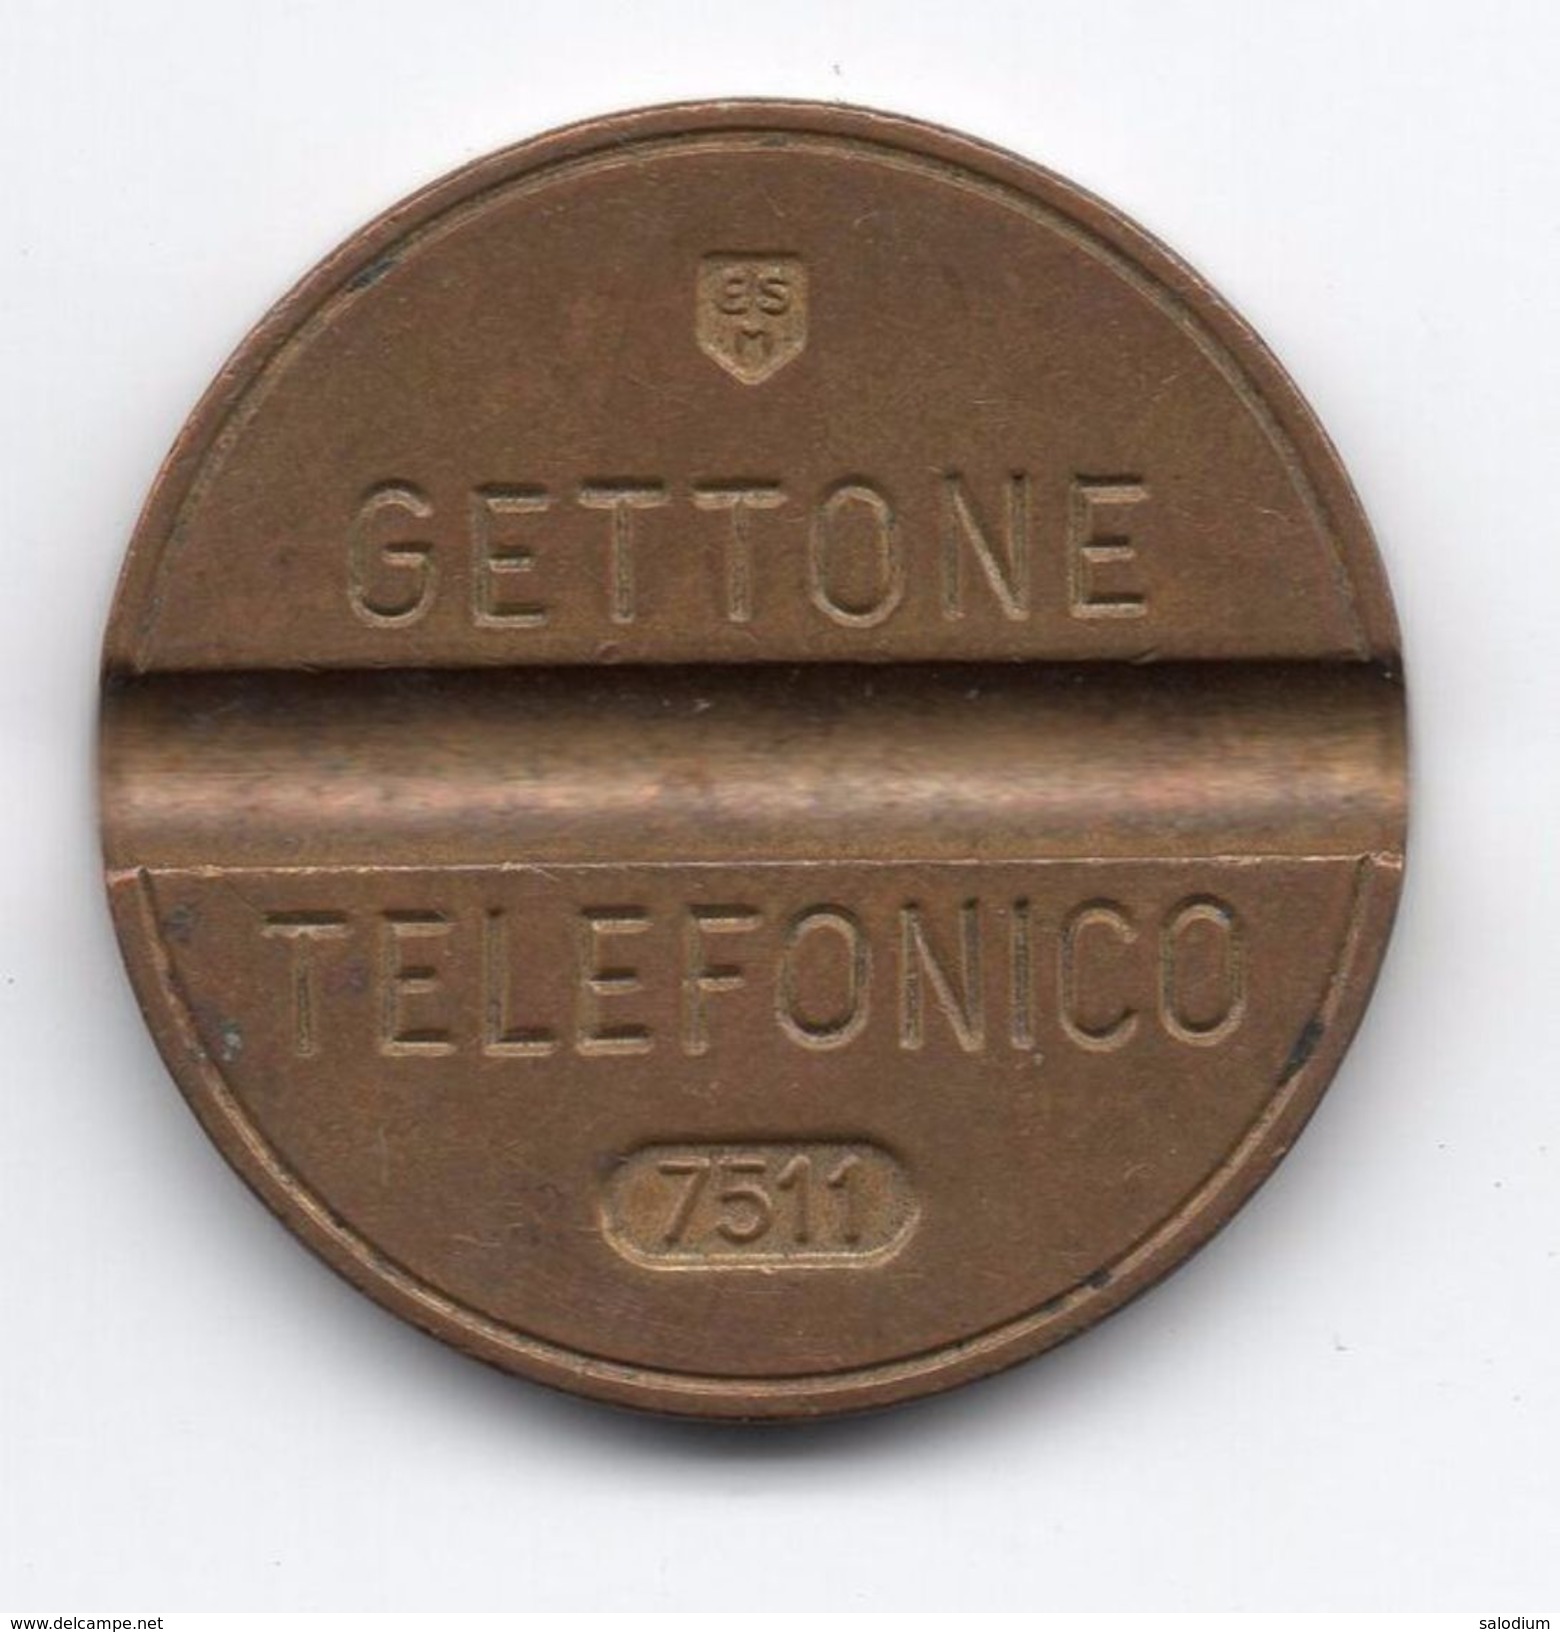 Gettone Telefonico 7511 Token Telephone - (Id-814) - Professionnels/De Société